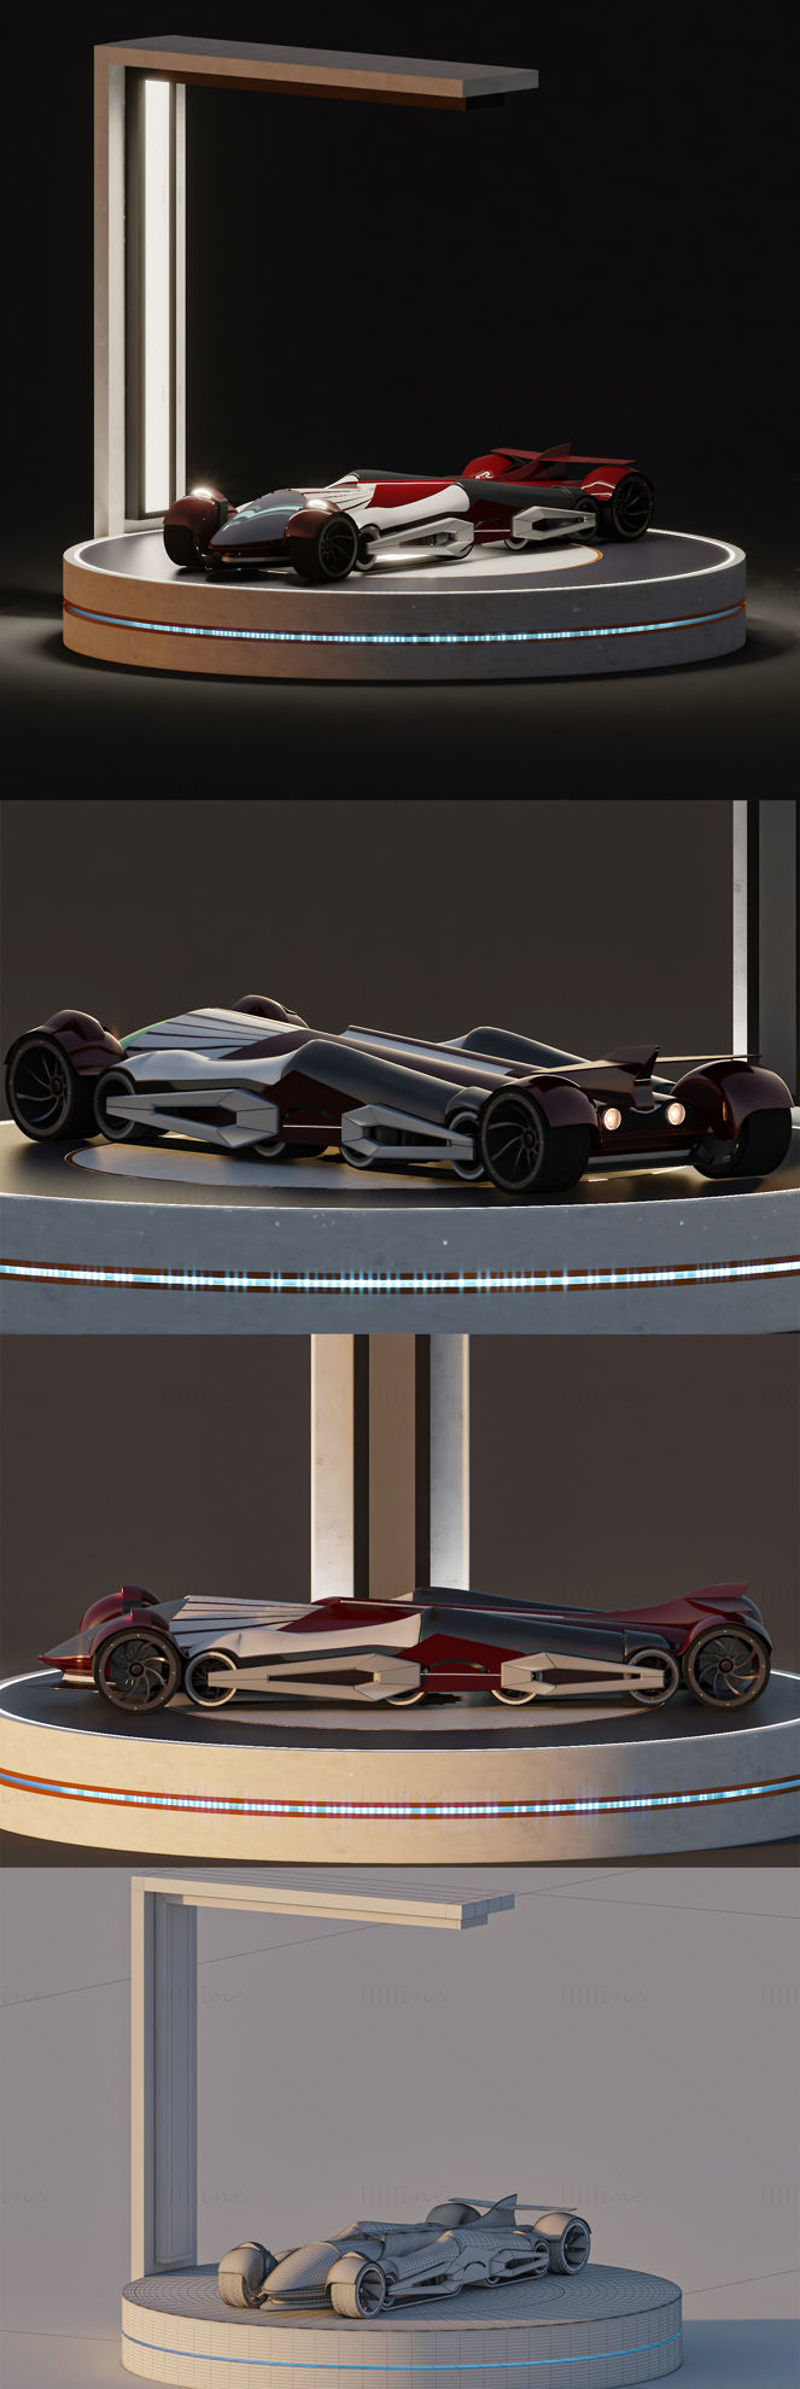 Concept car sportiva + scena del modello 3D della cabina